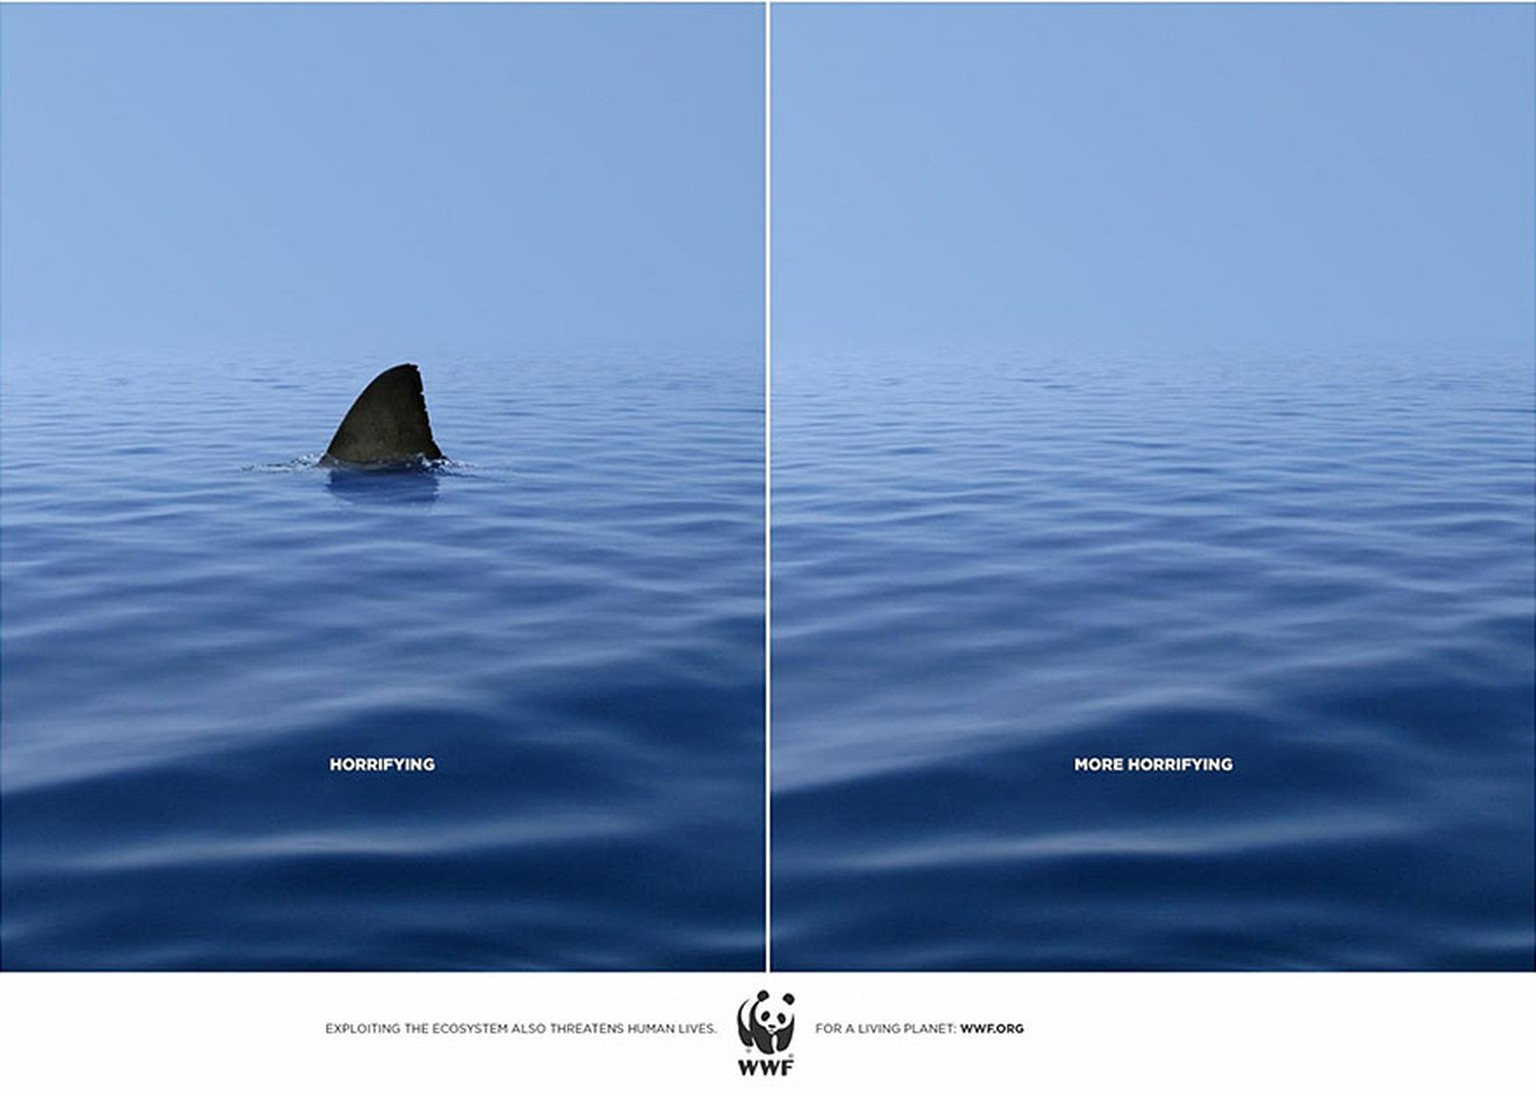 Die WWF-Kampagne zeigt, dass einige Tiere ein wildes Image haben, aber dass es ohne sie auch unfriedlich ist. &nbsp;